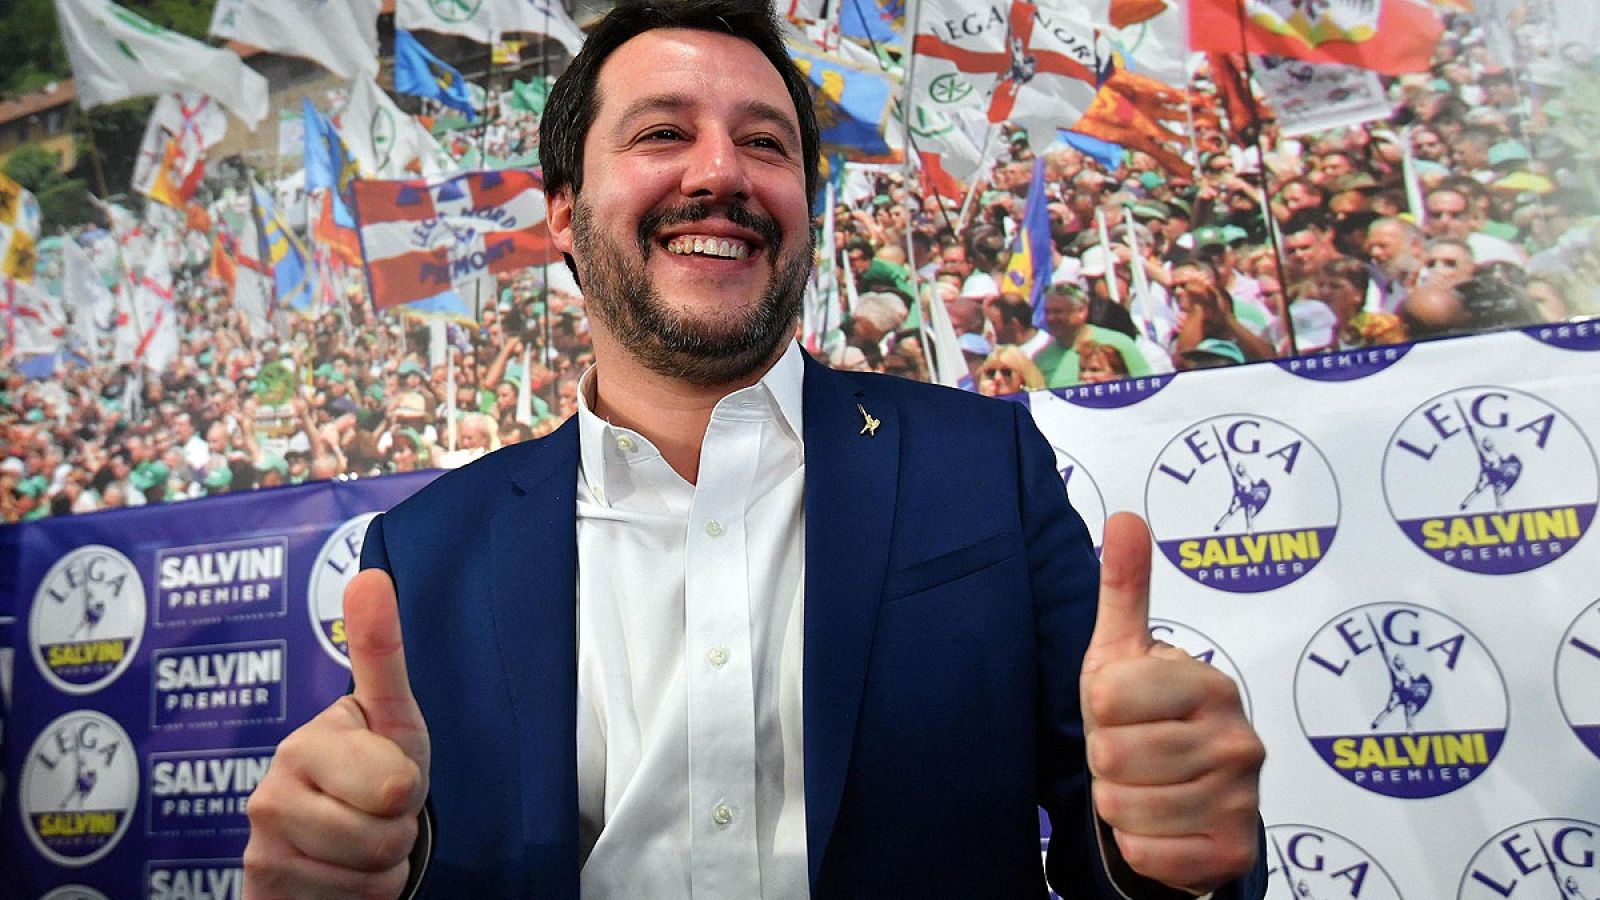 Matteo Salvini, líder de la Liga Norte, celebra el buen resultado de su partido tras las elecciones italianas.